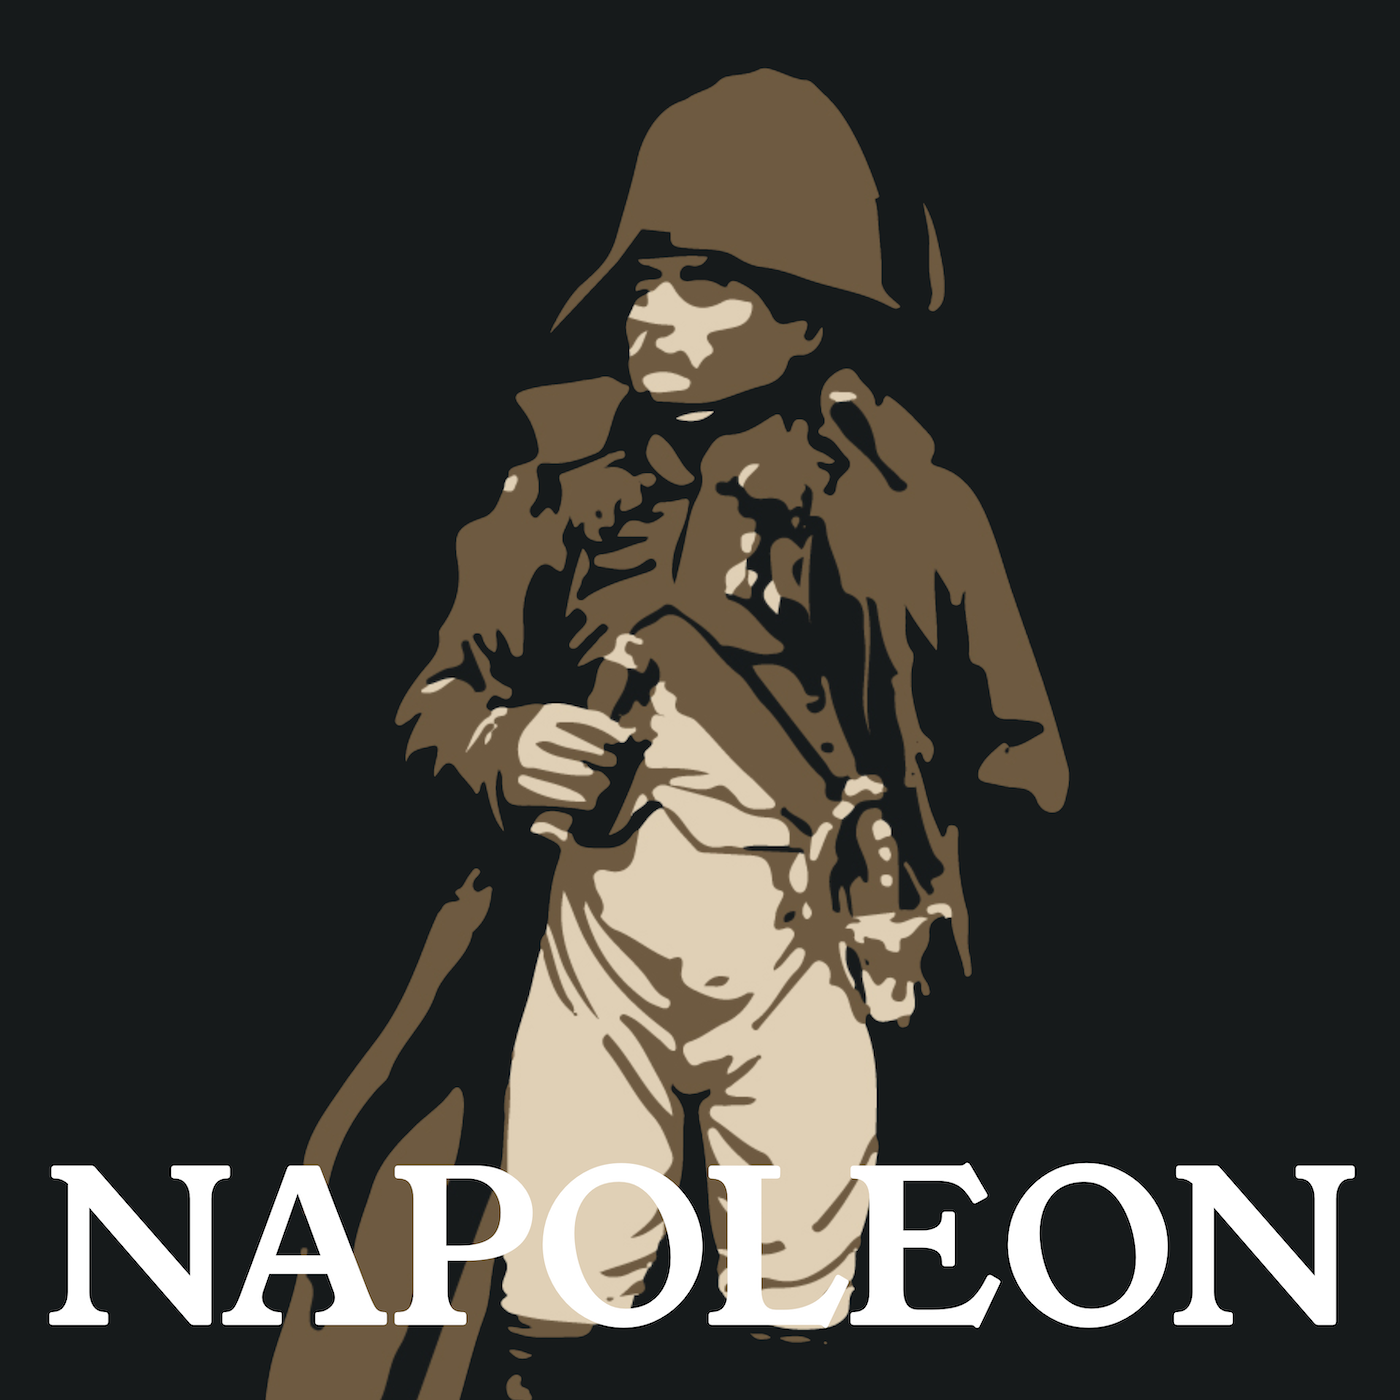 The Napoleon Bonaparte Podcast